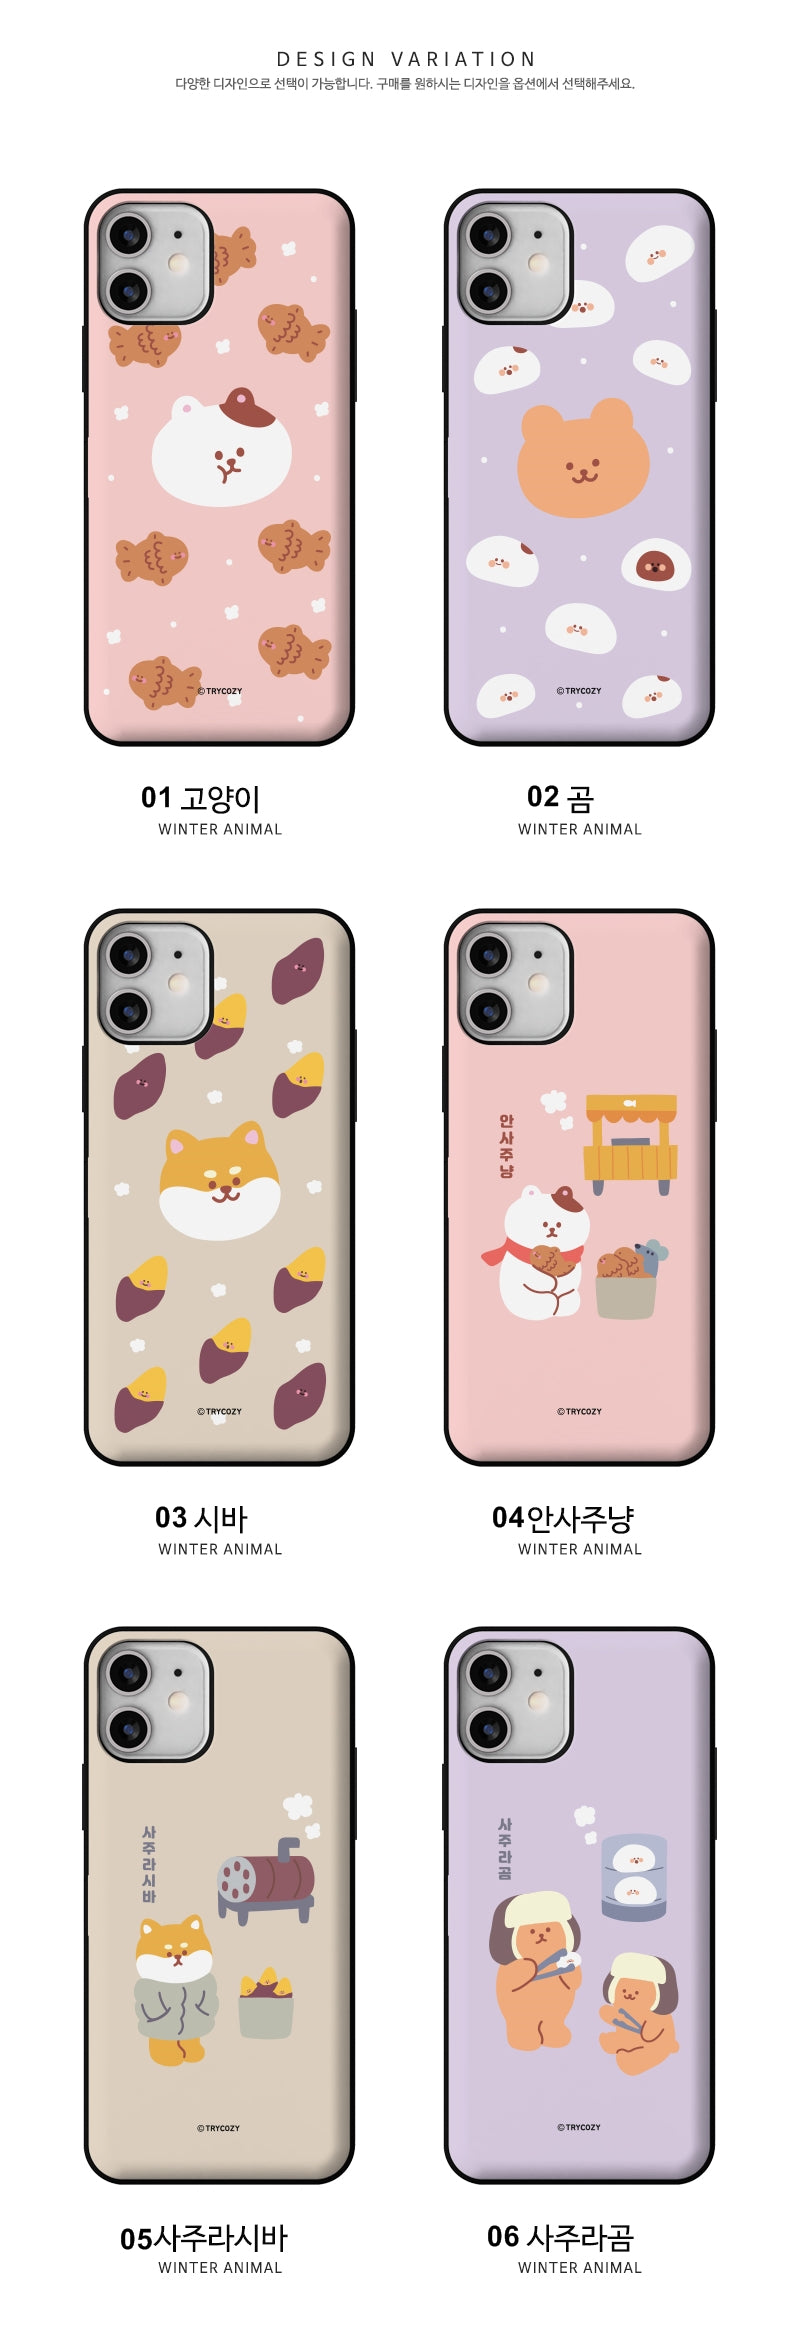 韓國直送 | C54 Winter Animals - 放卡手機殼 iPhone/ Samsung Galaxy